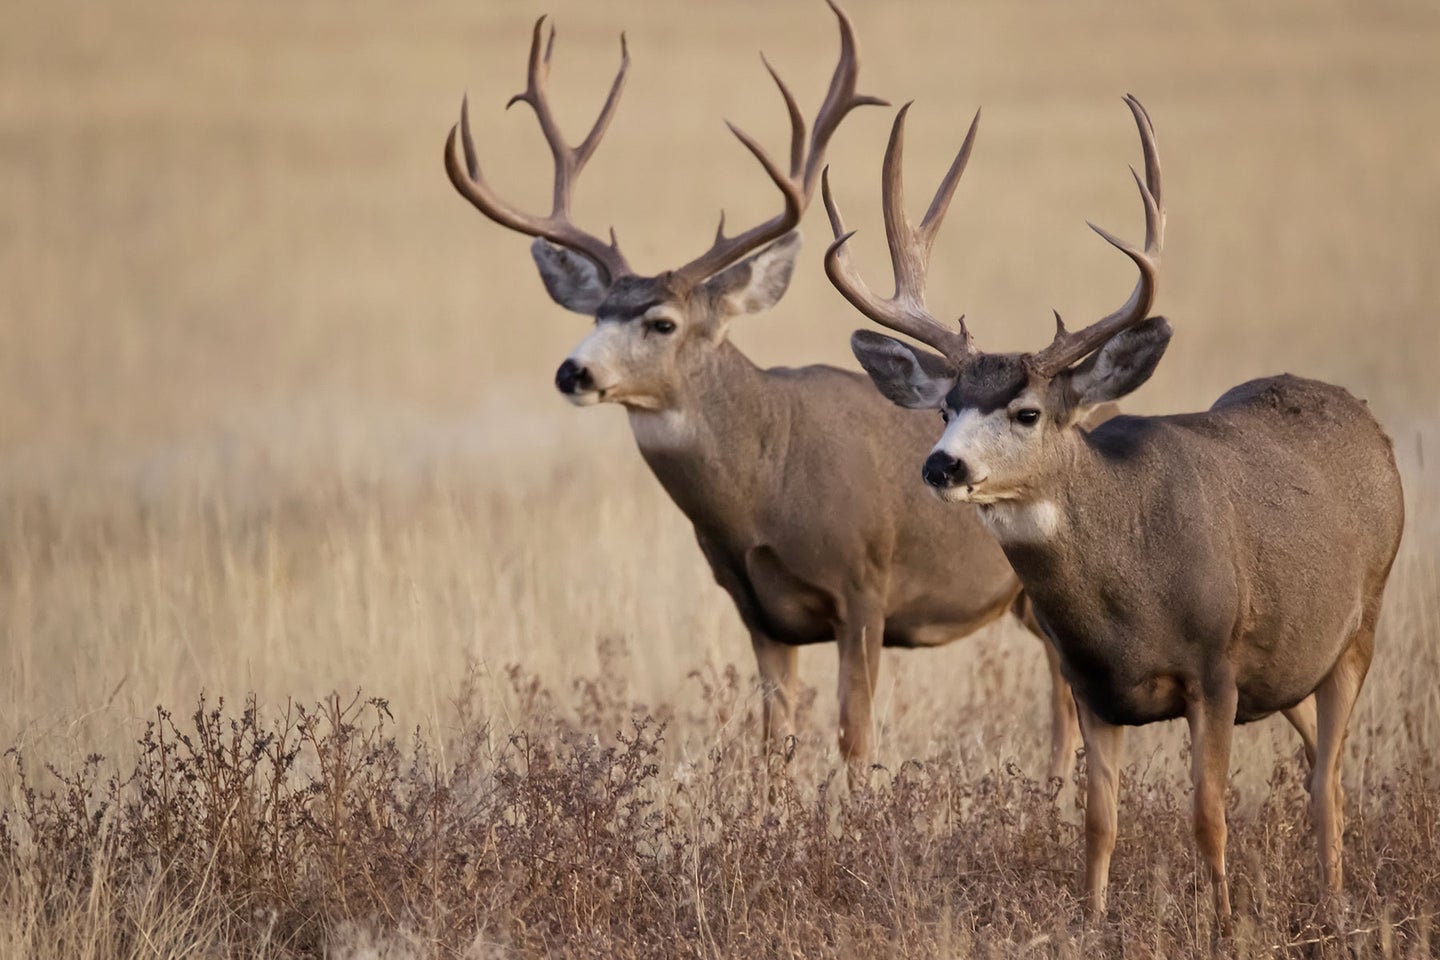 Two mule deer bucks in a field.